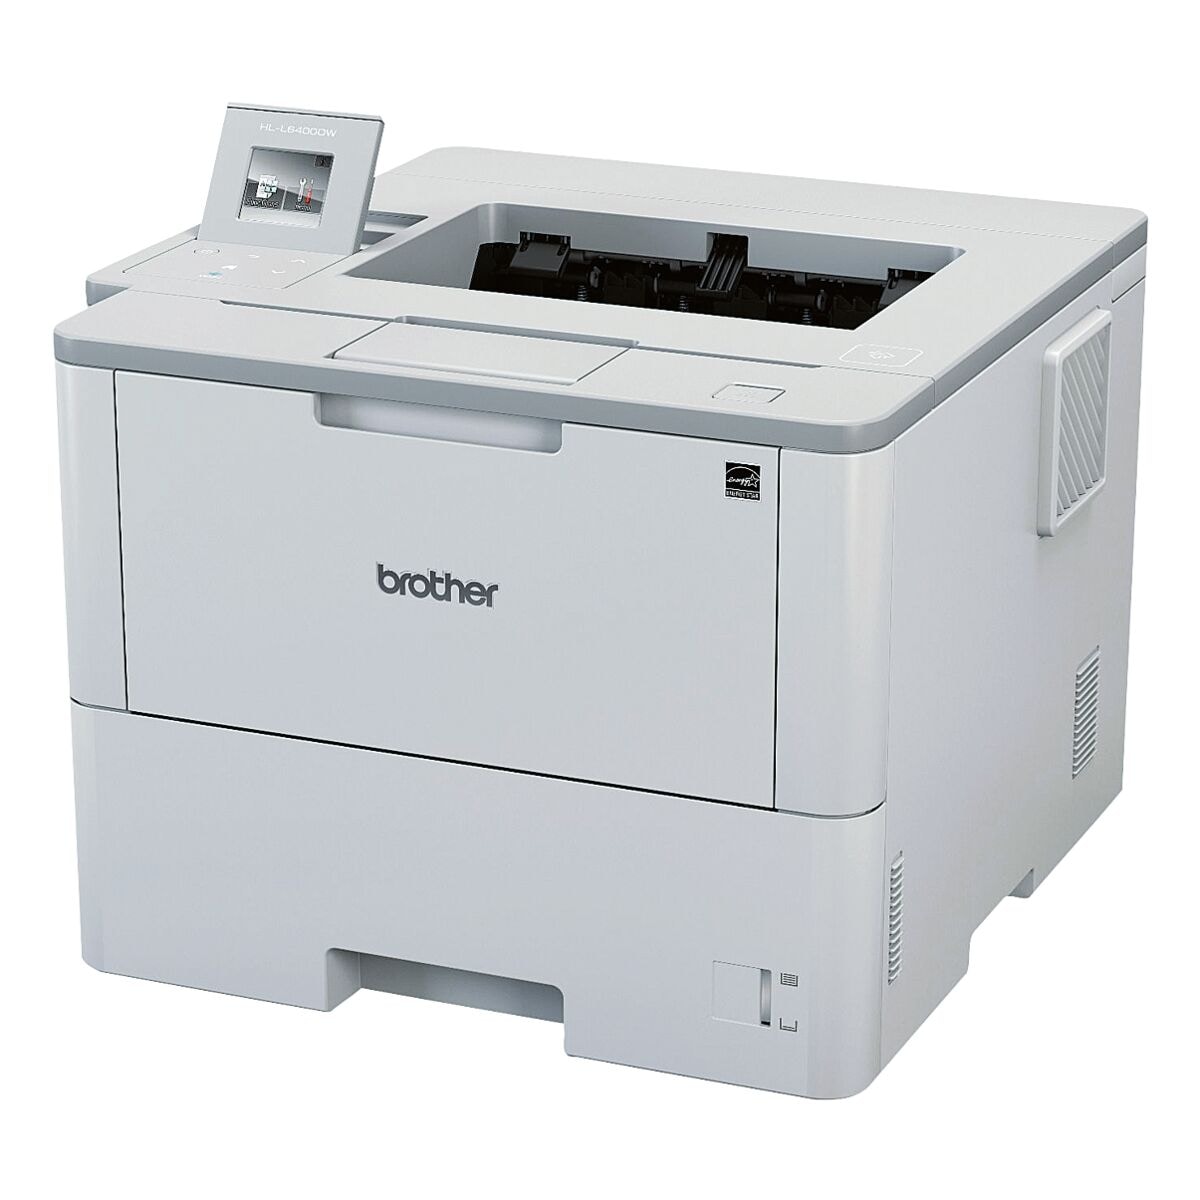 Brother HL-L6400DW  Laserdrucker, A4 schwarz weiß Laserdrucker, 1200 x 1200 dpi, mit LAN und WLAN